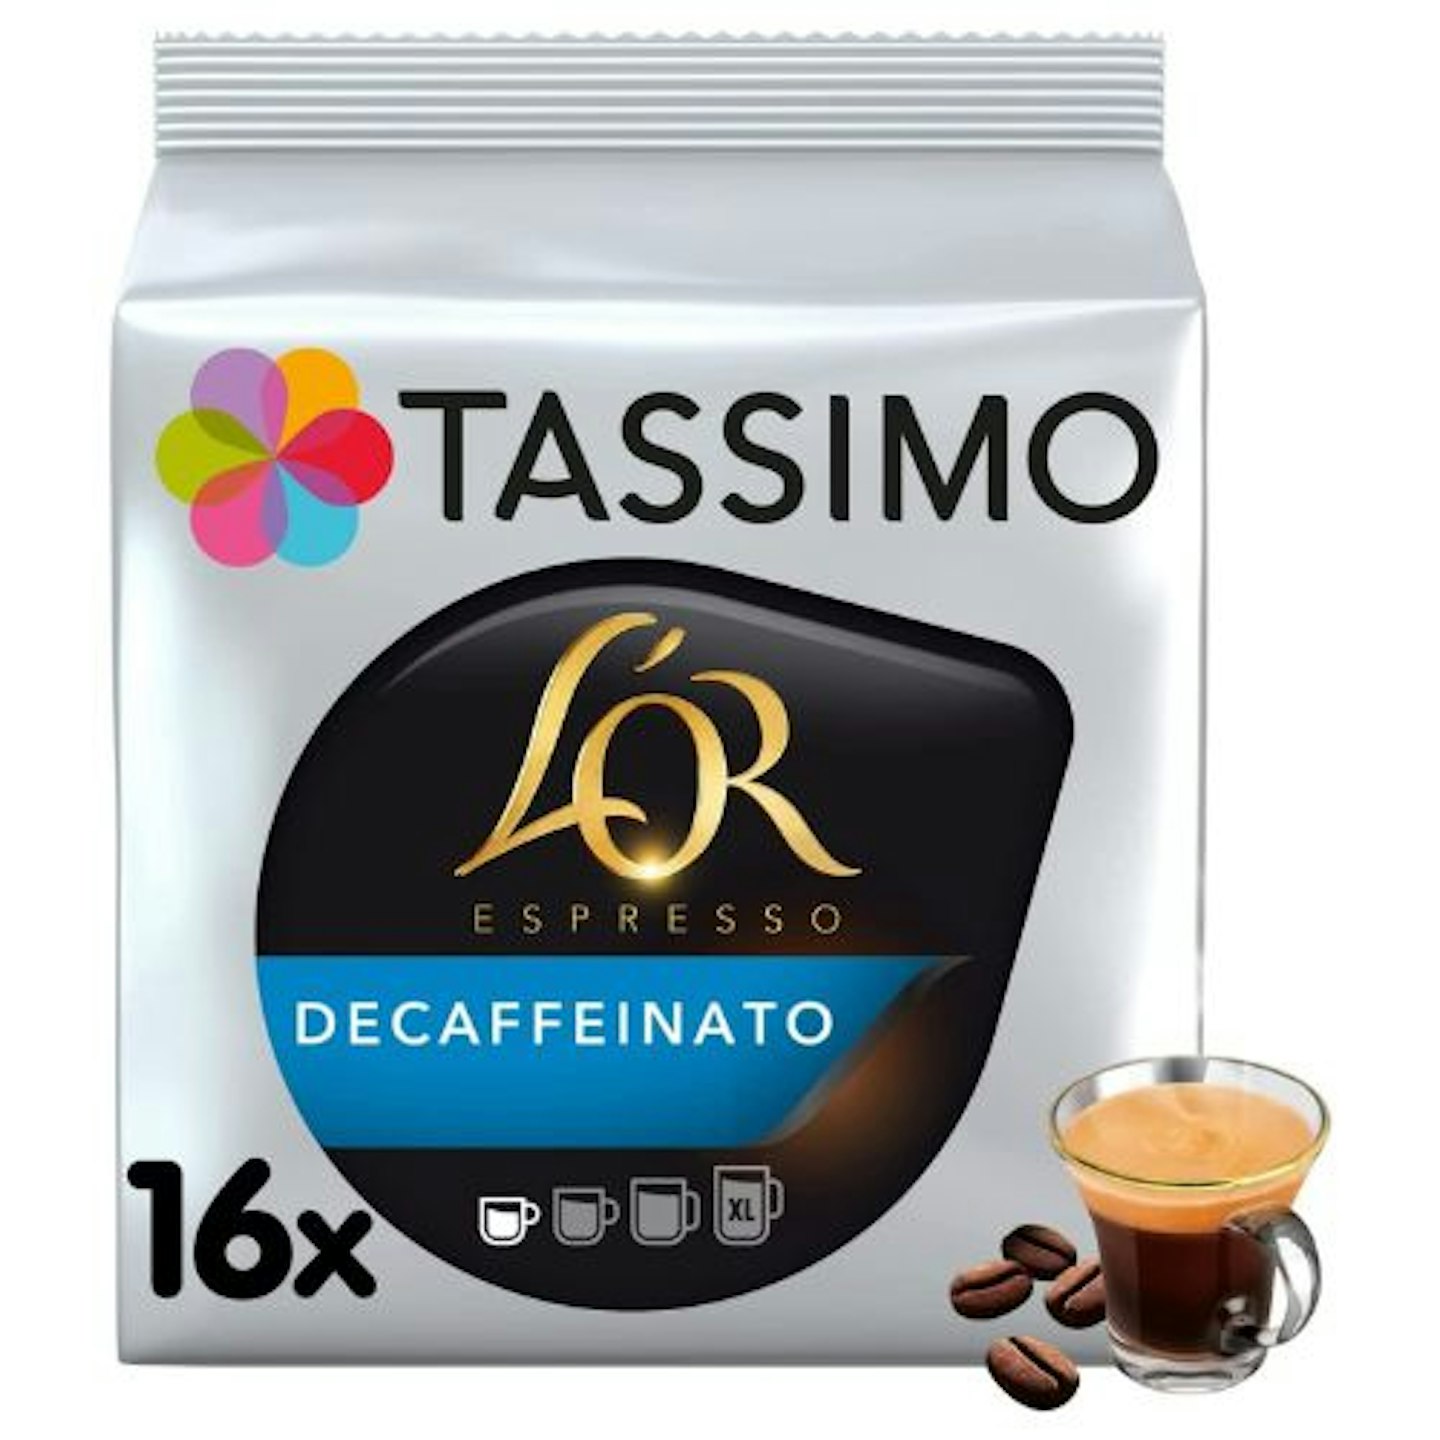 TASSIMO L'OR Espresso Decaffeinato Coffee Small pods